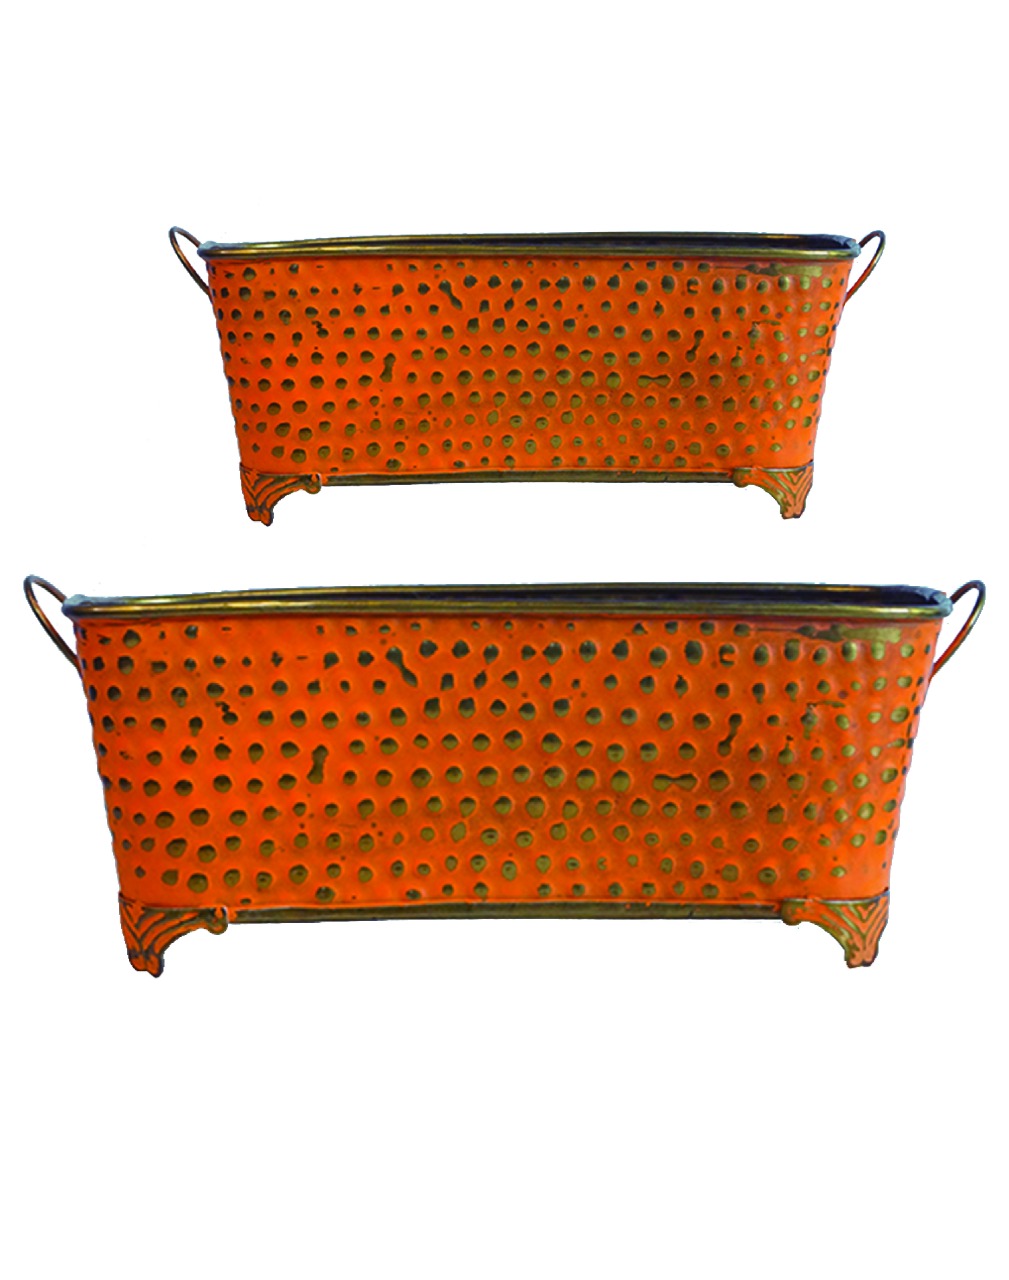 Orange Rustic Metal Rectangular Bucket Patio Planters with Handles (Set of 2)